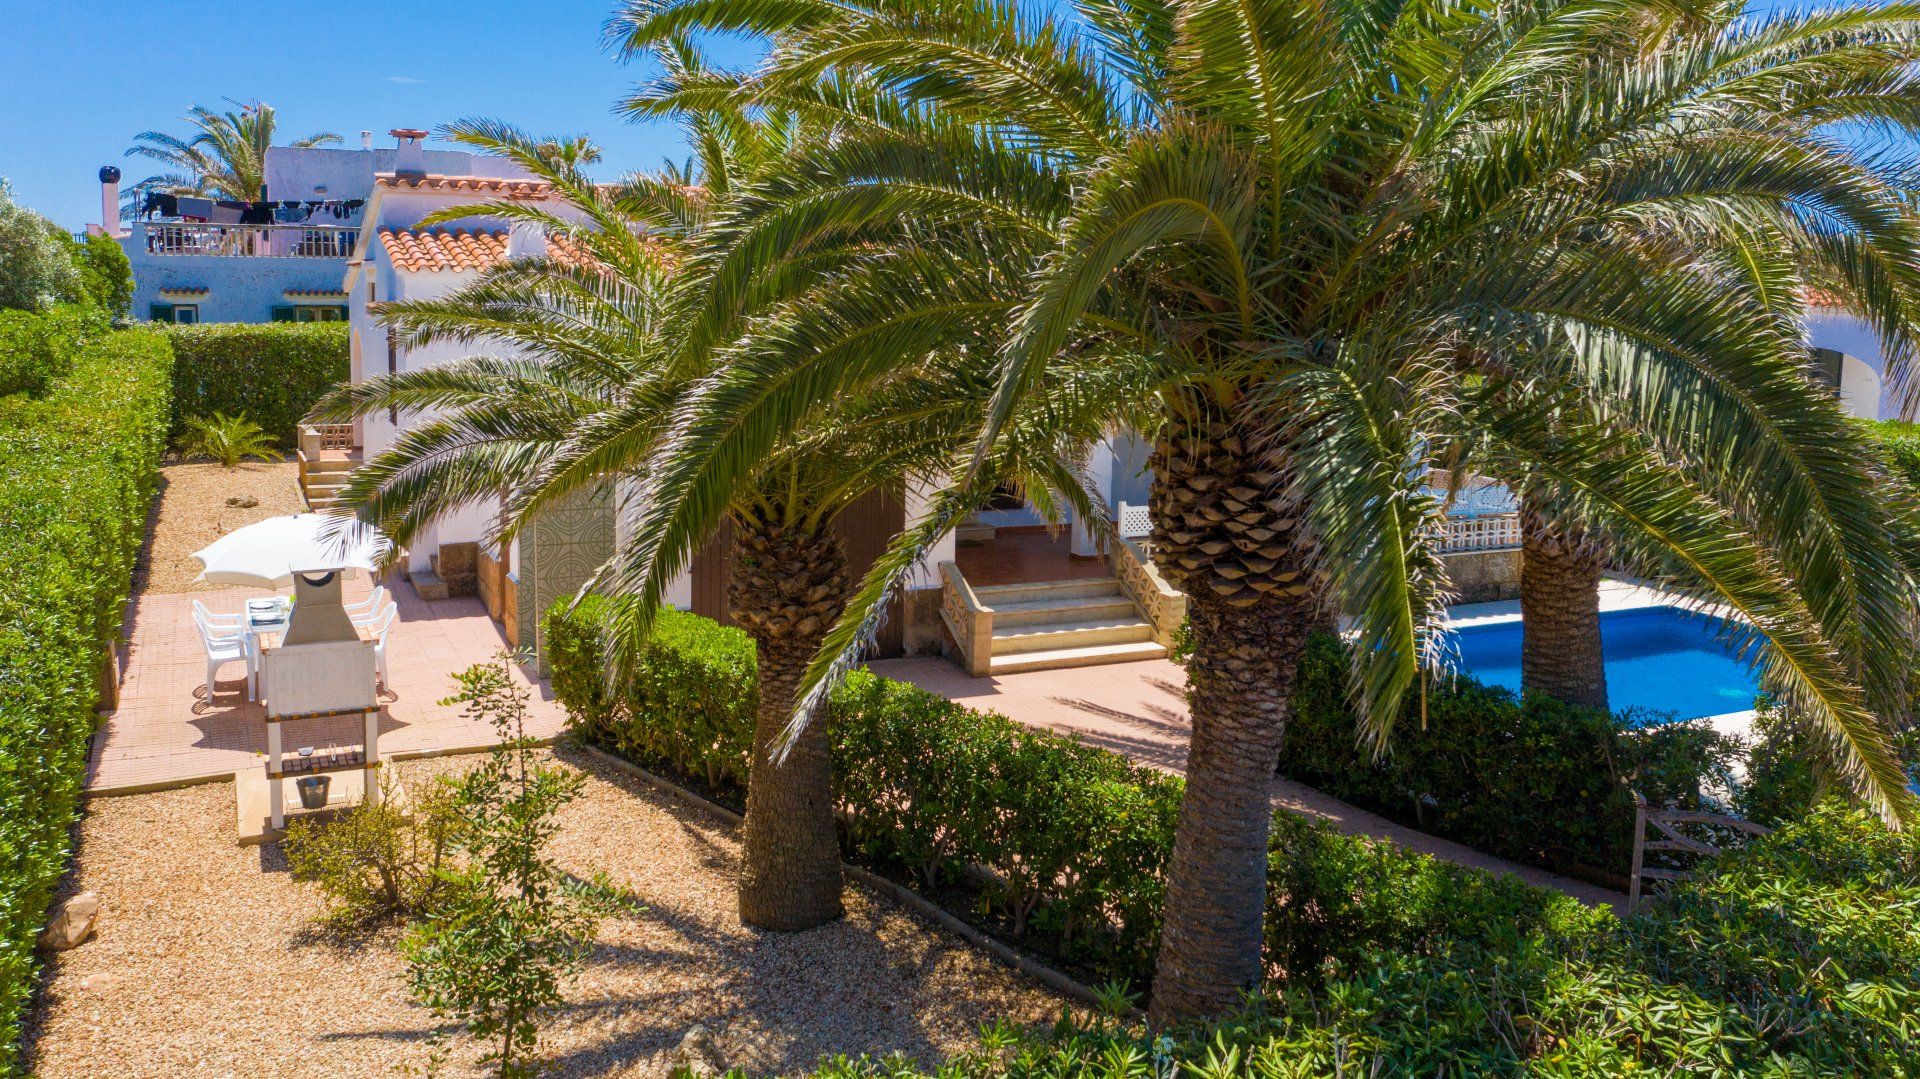 Villa Aure, Chalet con barbacoa en Menorca. Vista general del jardín.